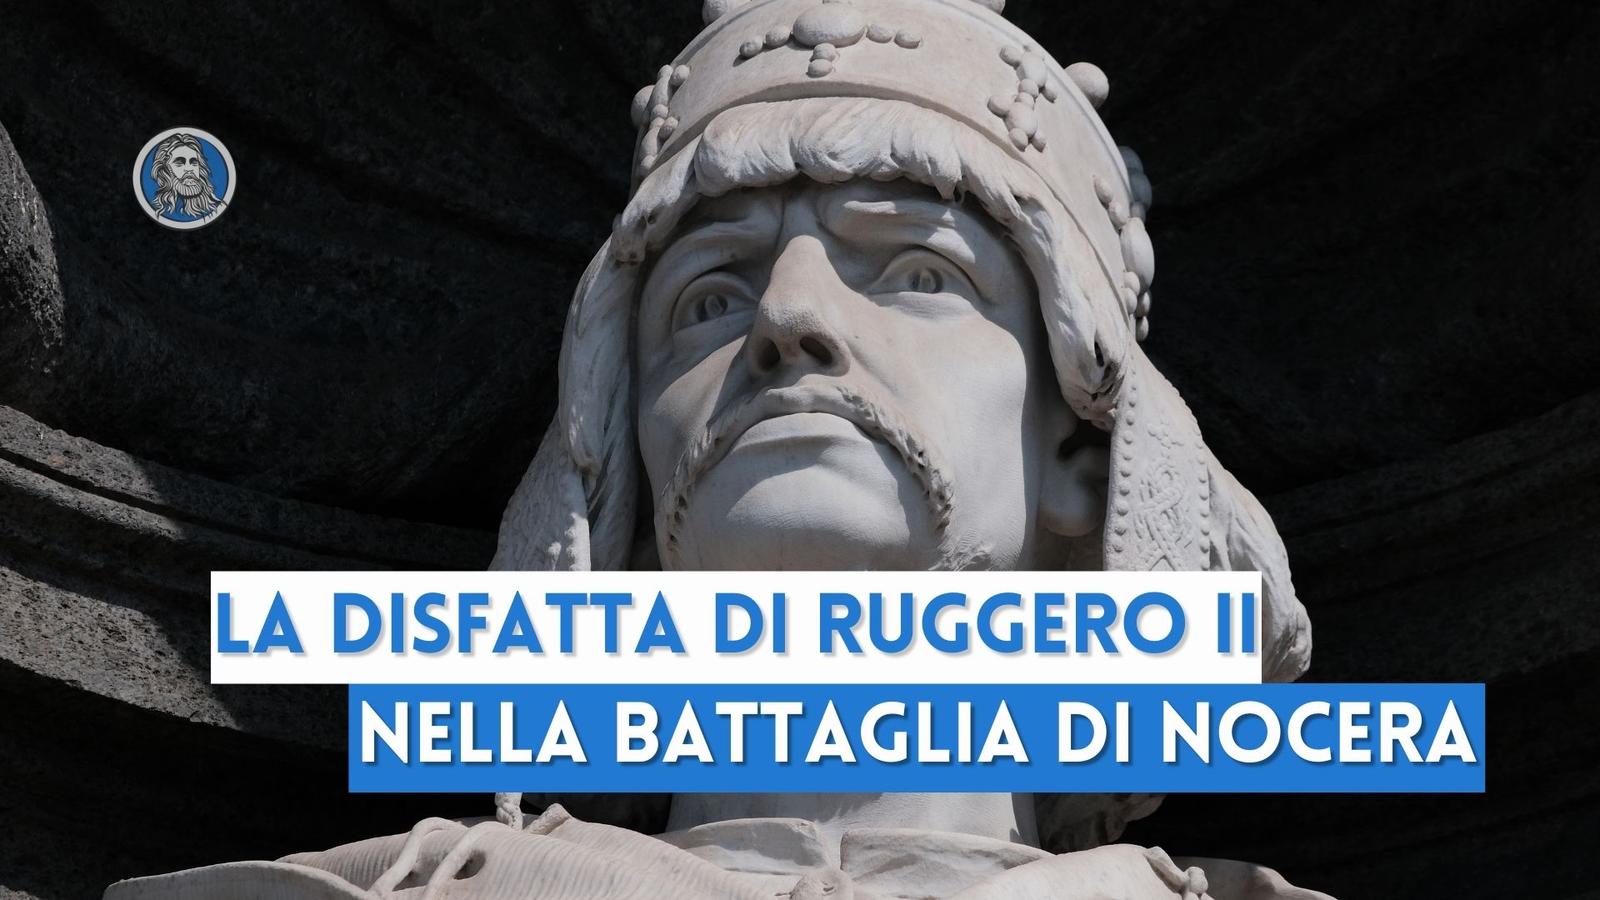 La disfatta di Ruggero II nella storica battaglia di Nocera